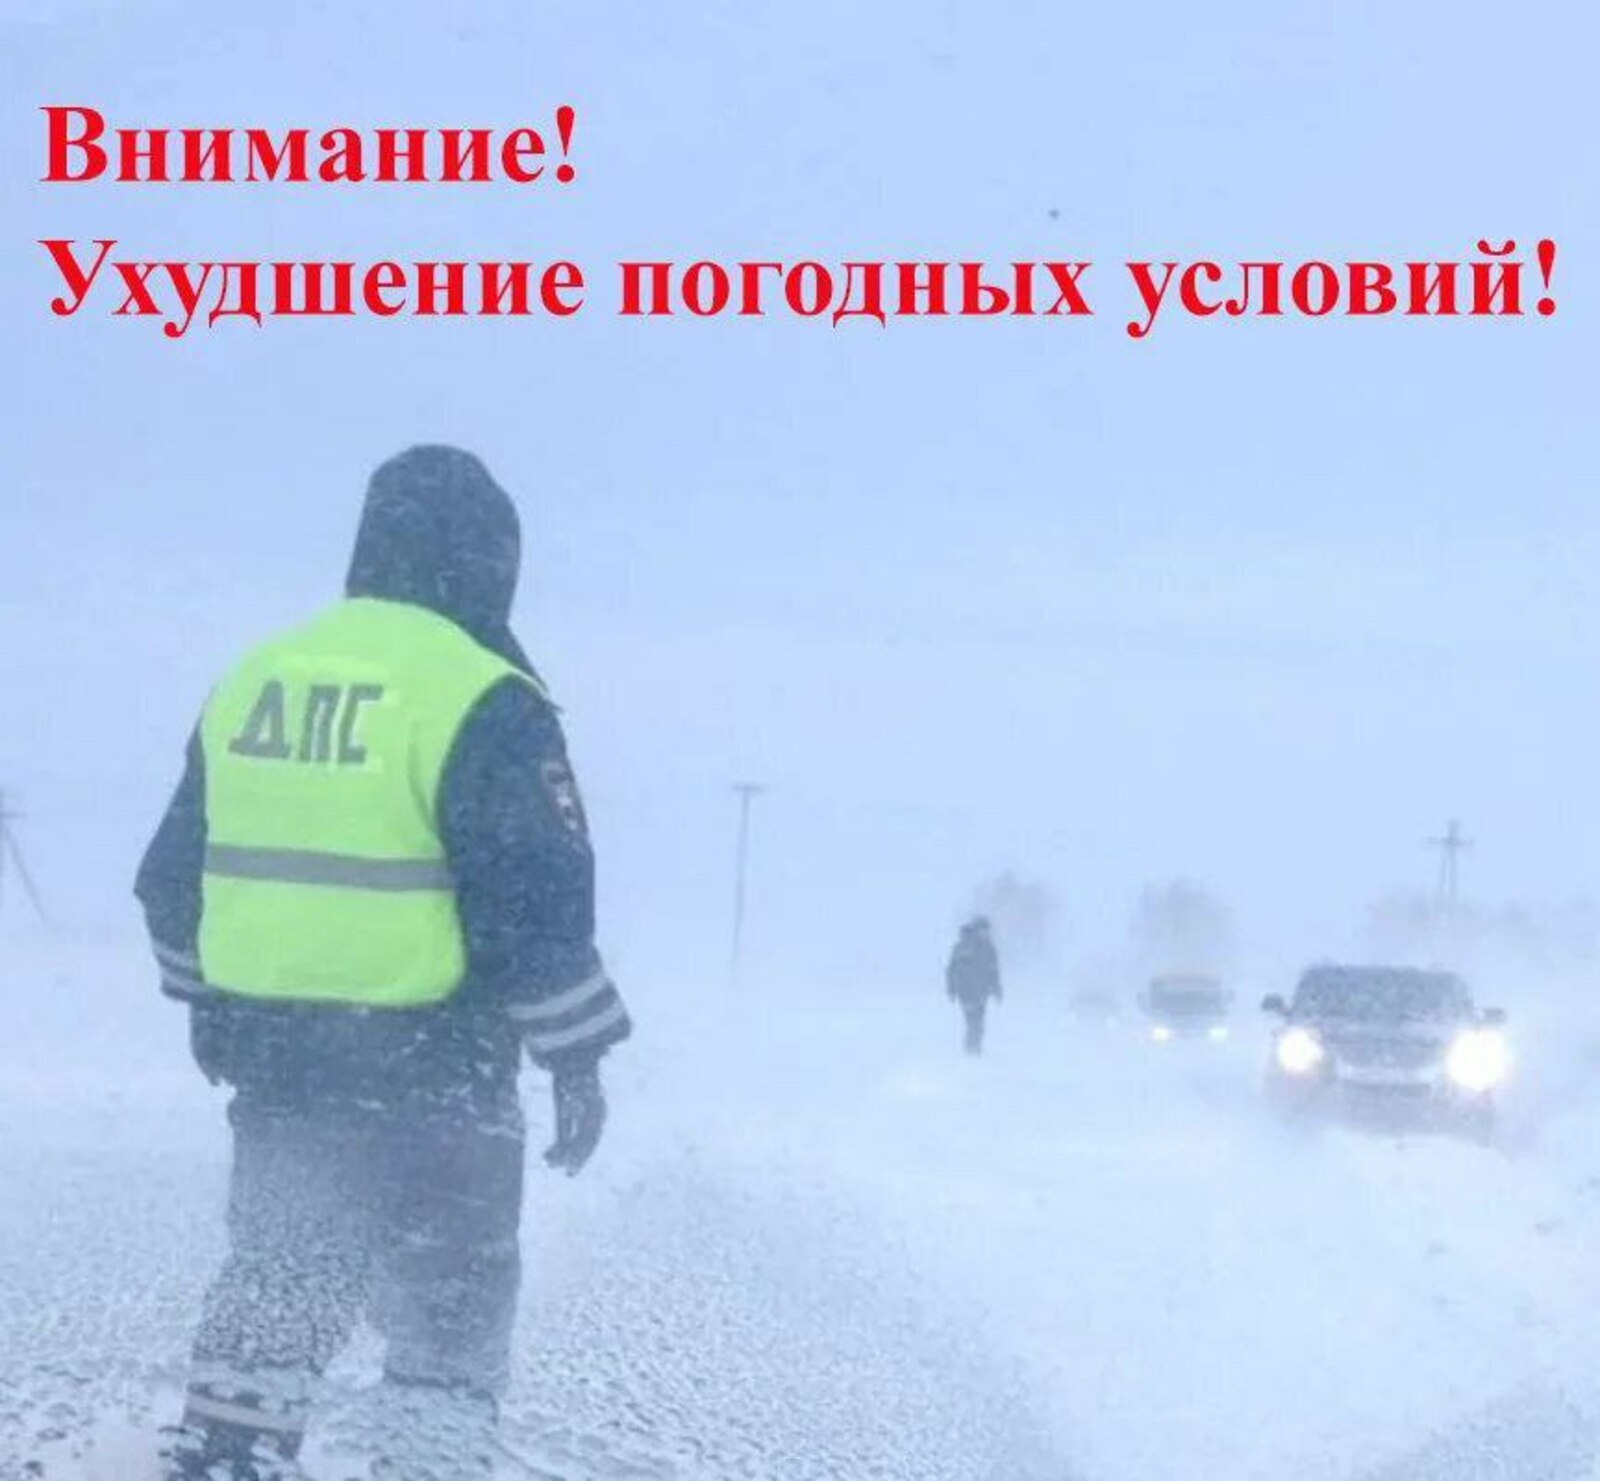 ГИБДД Башкирии предупреждает об ухудшении погодных условий